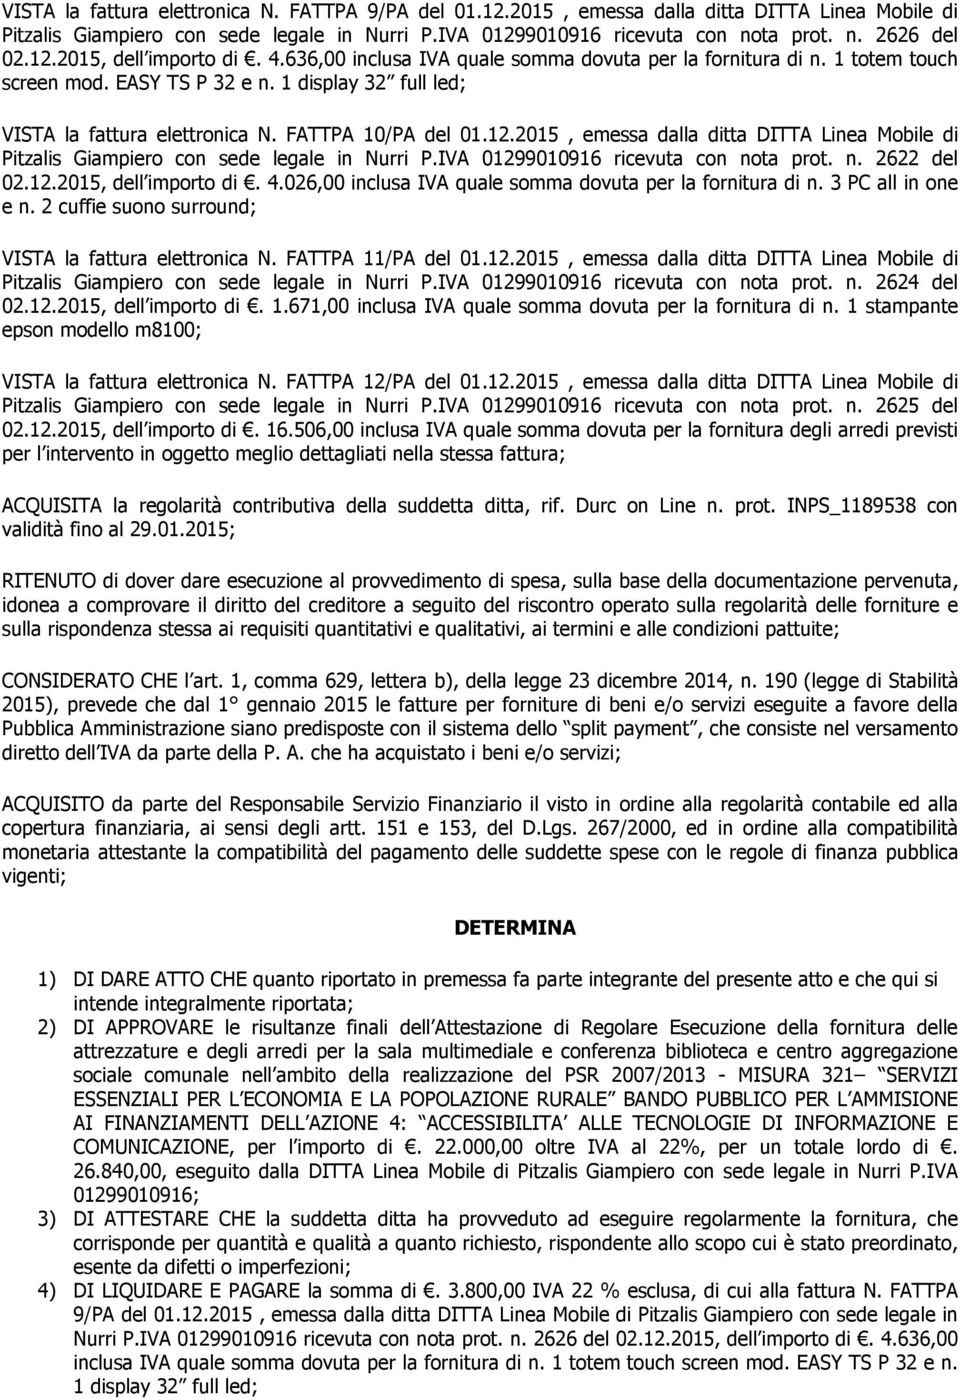 FATTPA 10/PA del 01.12.2015, emessa dalla ditta DITTA Linea Mobile di Pitzalis Giampiero con sede legale in Nurri P.IVA 01299010916 ricevuta con nota prot. n. 2622 del 02.12.2015, dell importo di. 4.